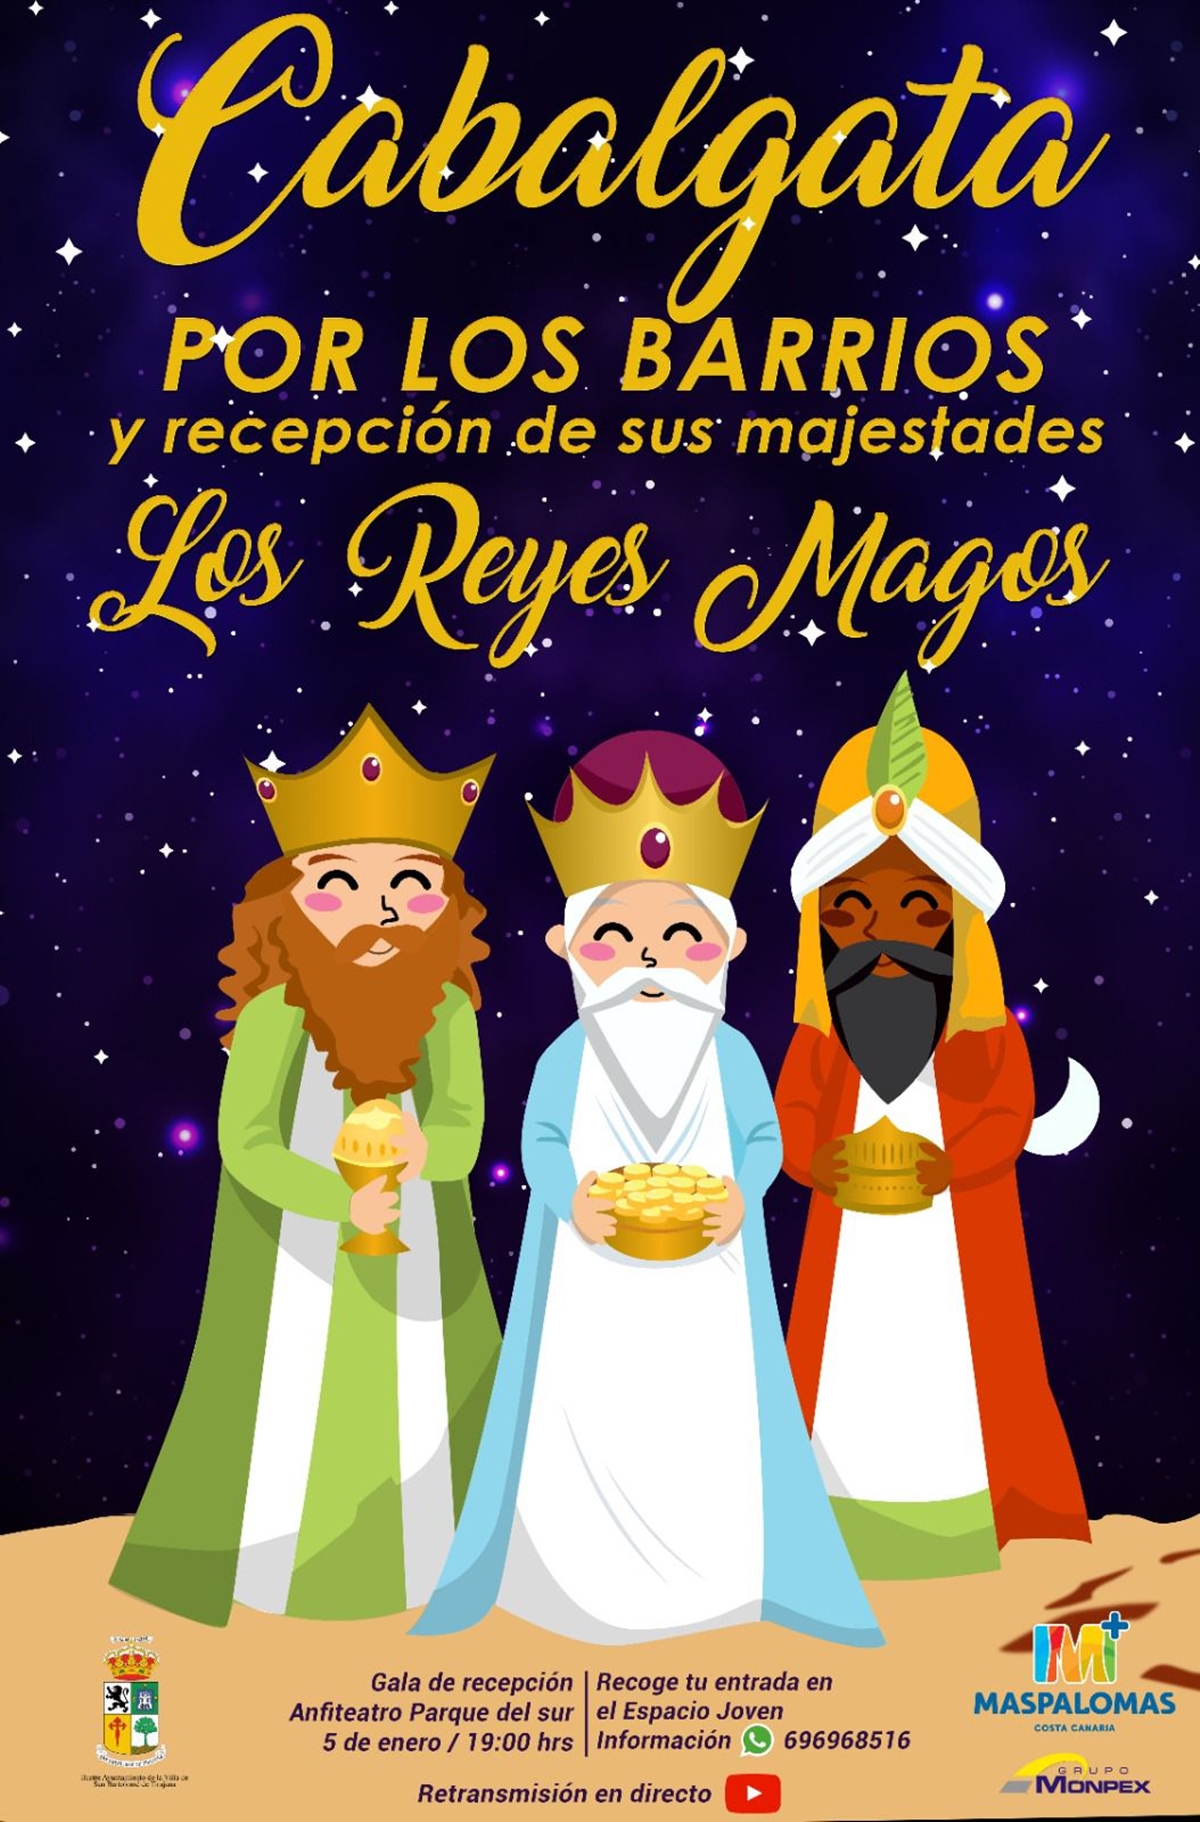 Cabalgata Reyes Magos